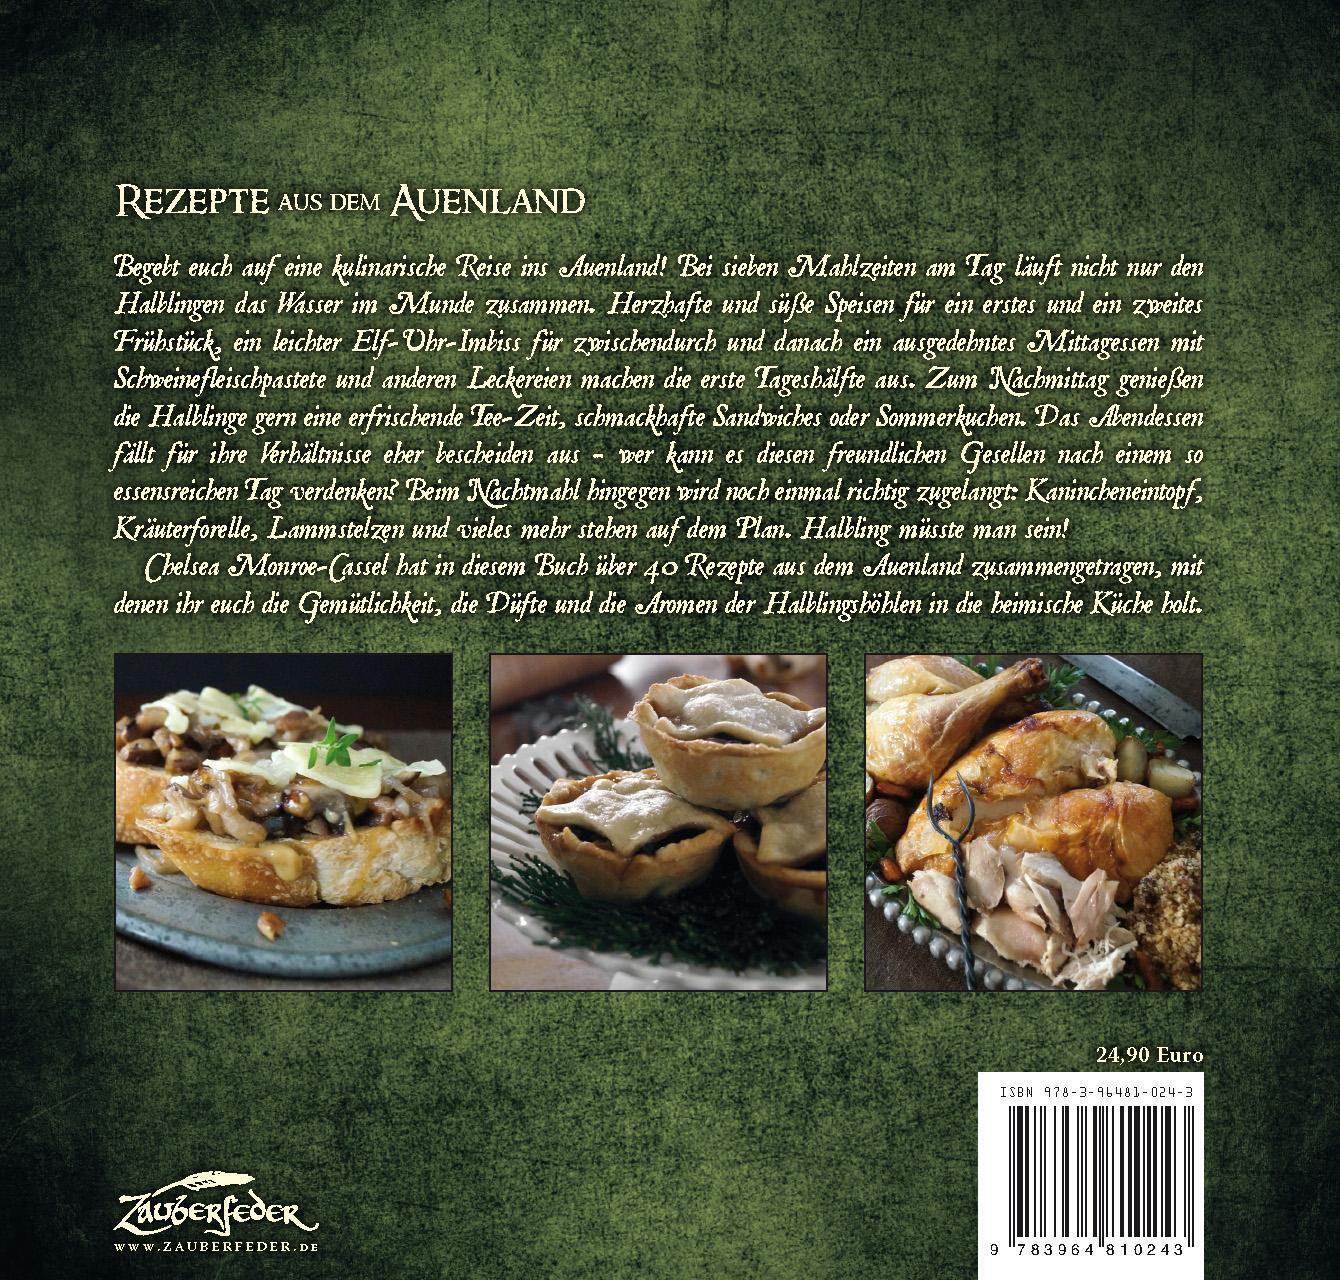 Rückseite: 9783964810243 | Rezepte aus dem Auenland | Das Halblings-Kochbuch | Monroe-Cassel